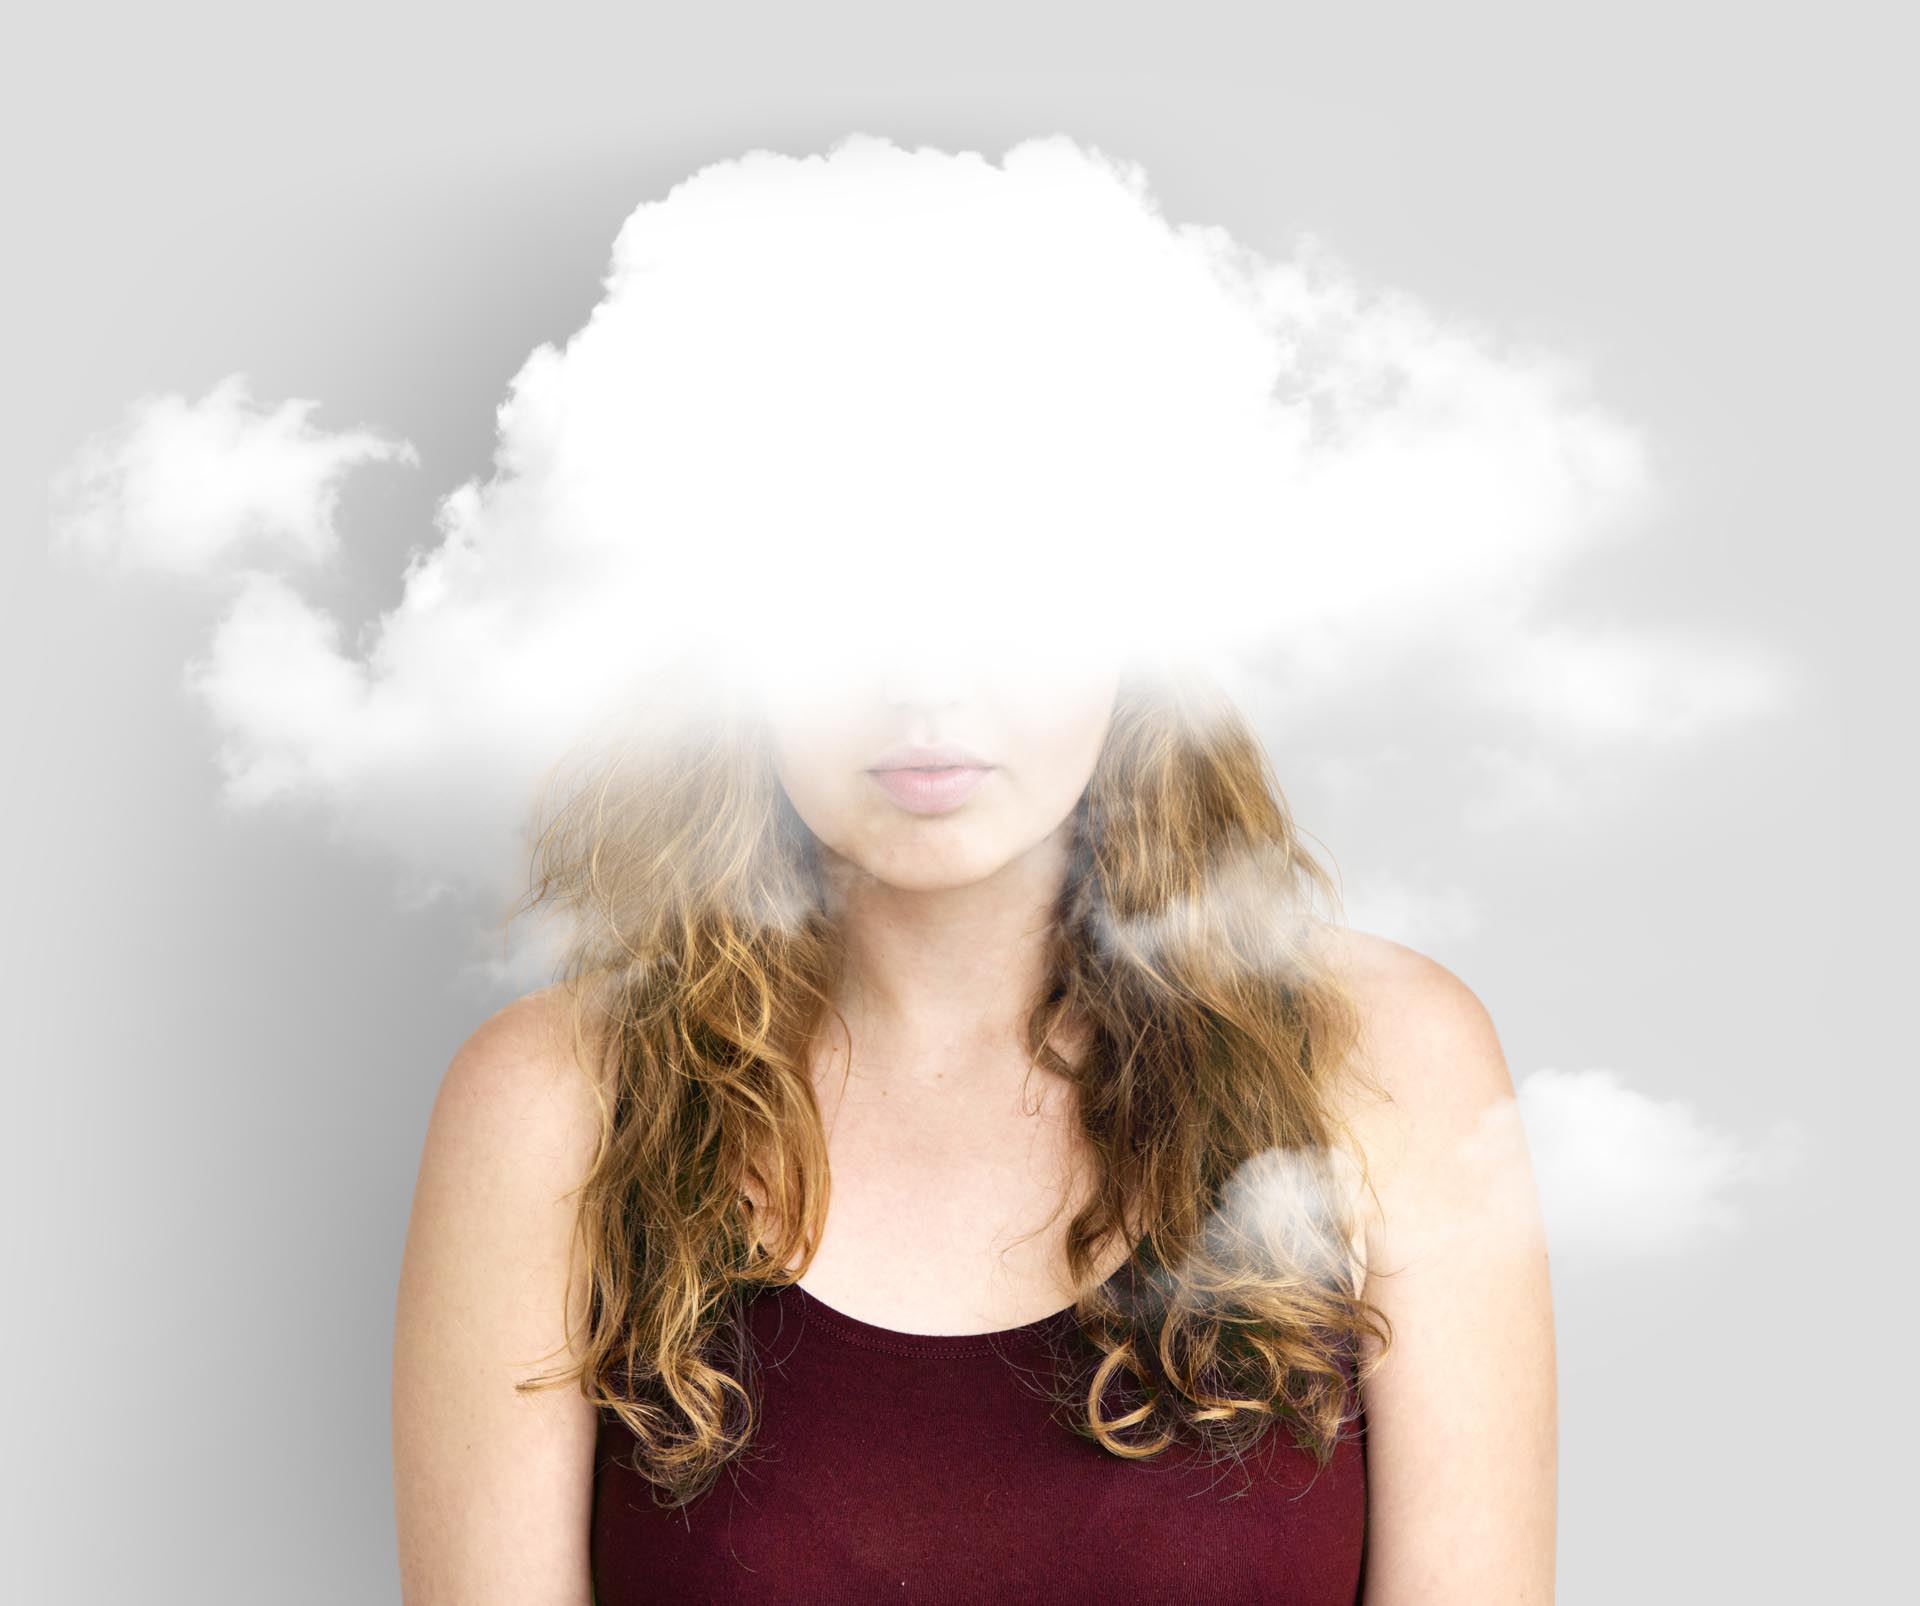 Cloud Hidden Dilemma Depression Bliss